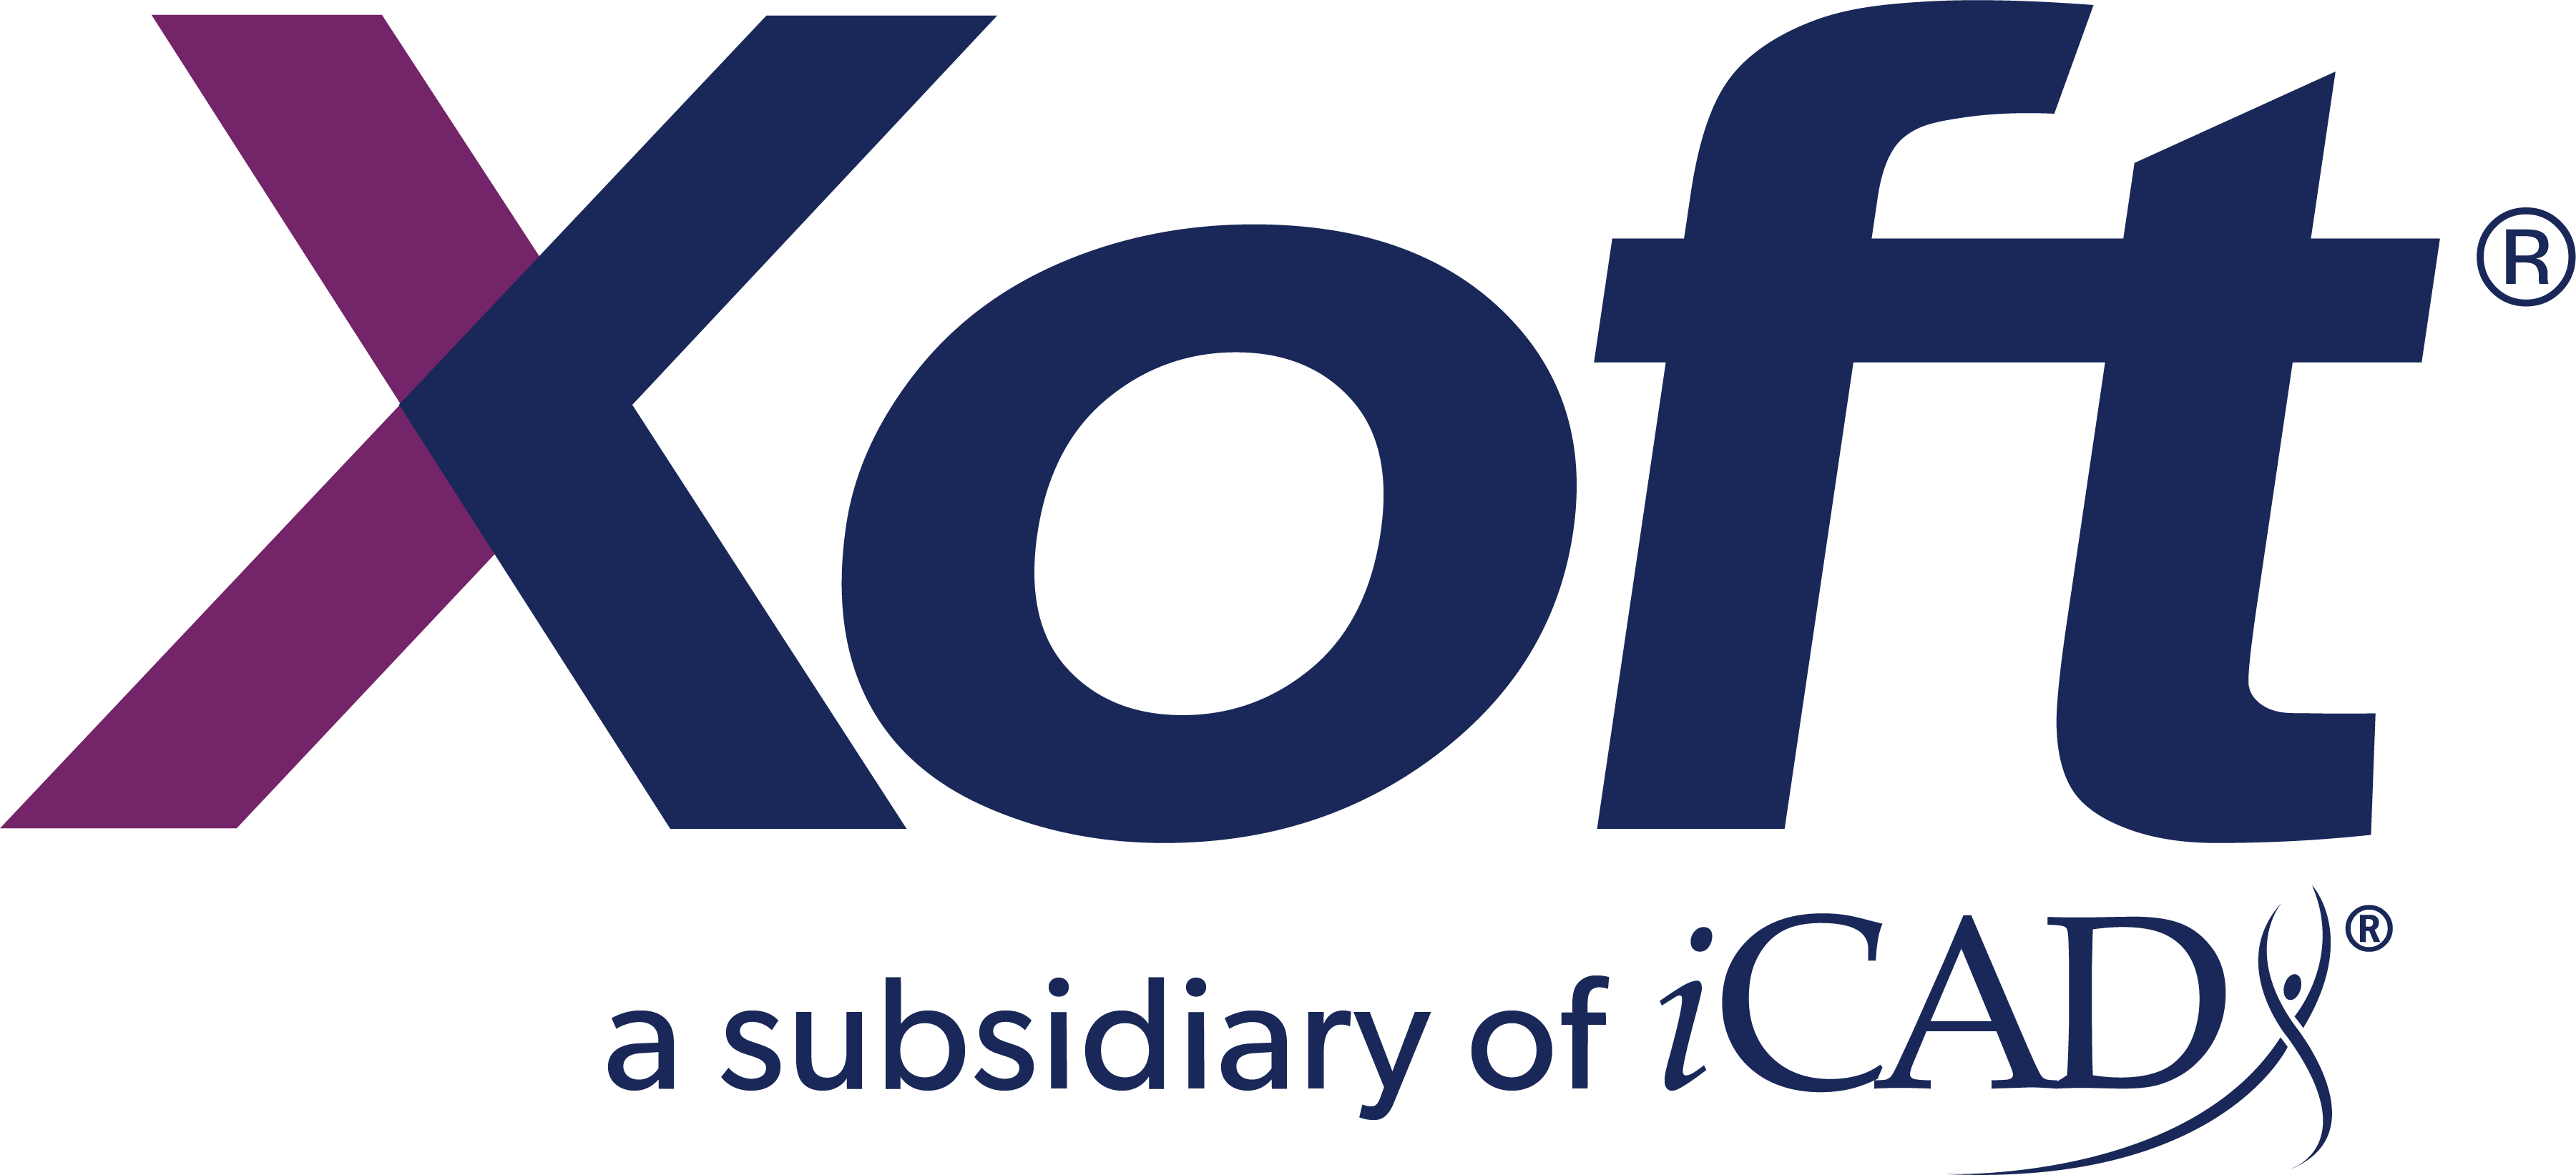 Xoft_logo - PMS255_PMS281.png